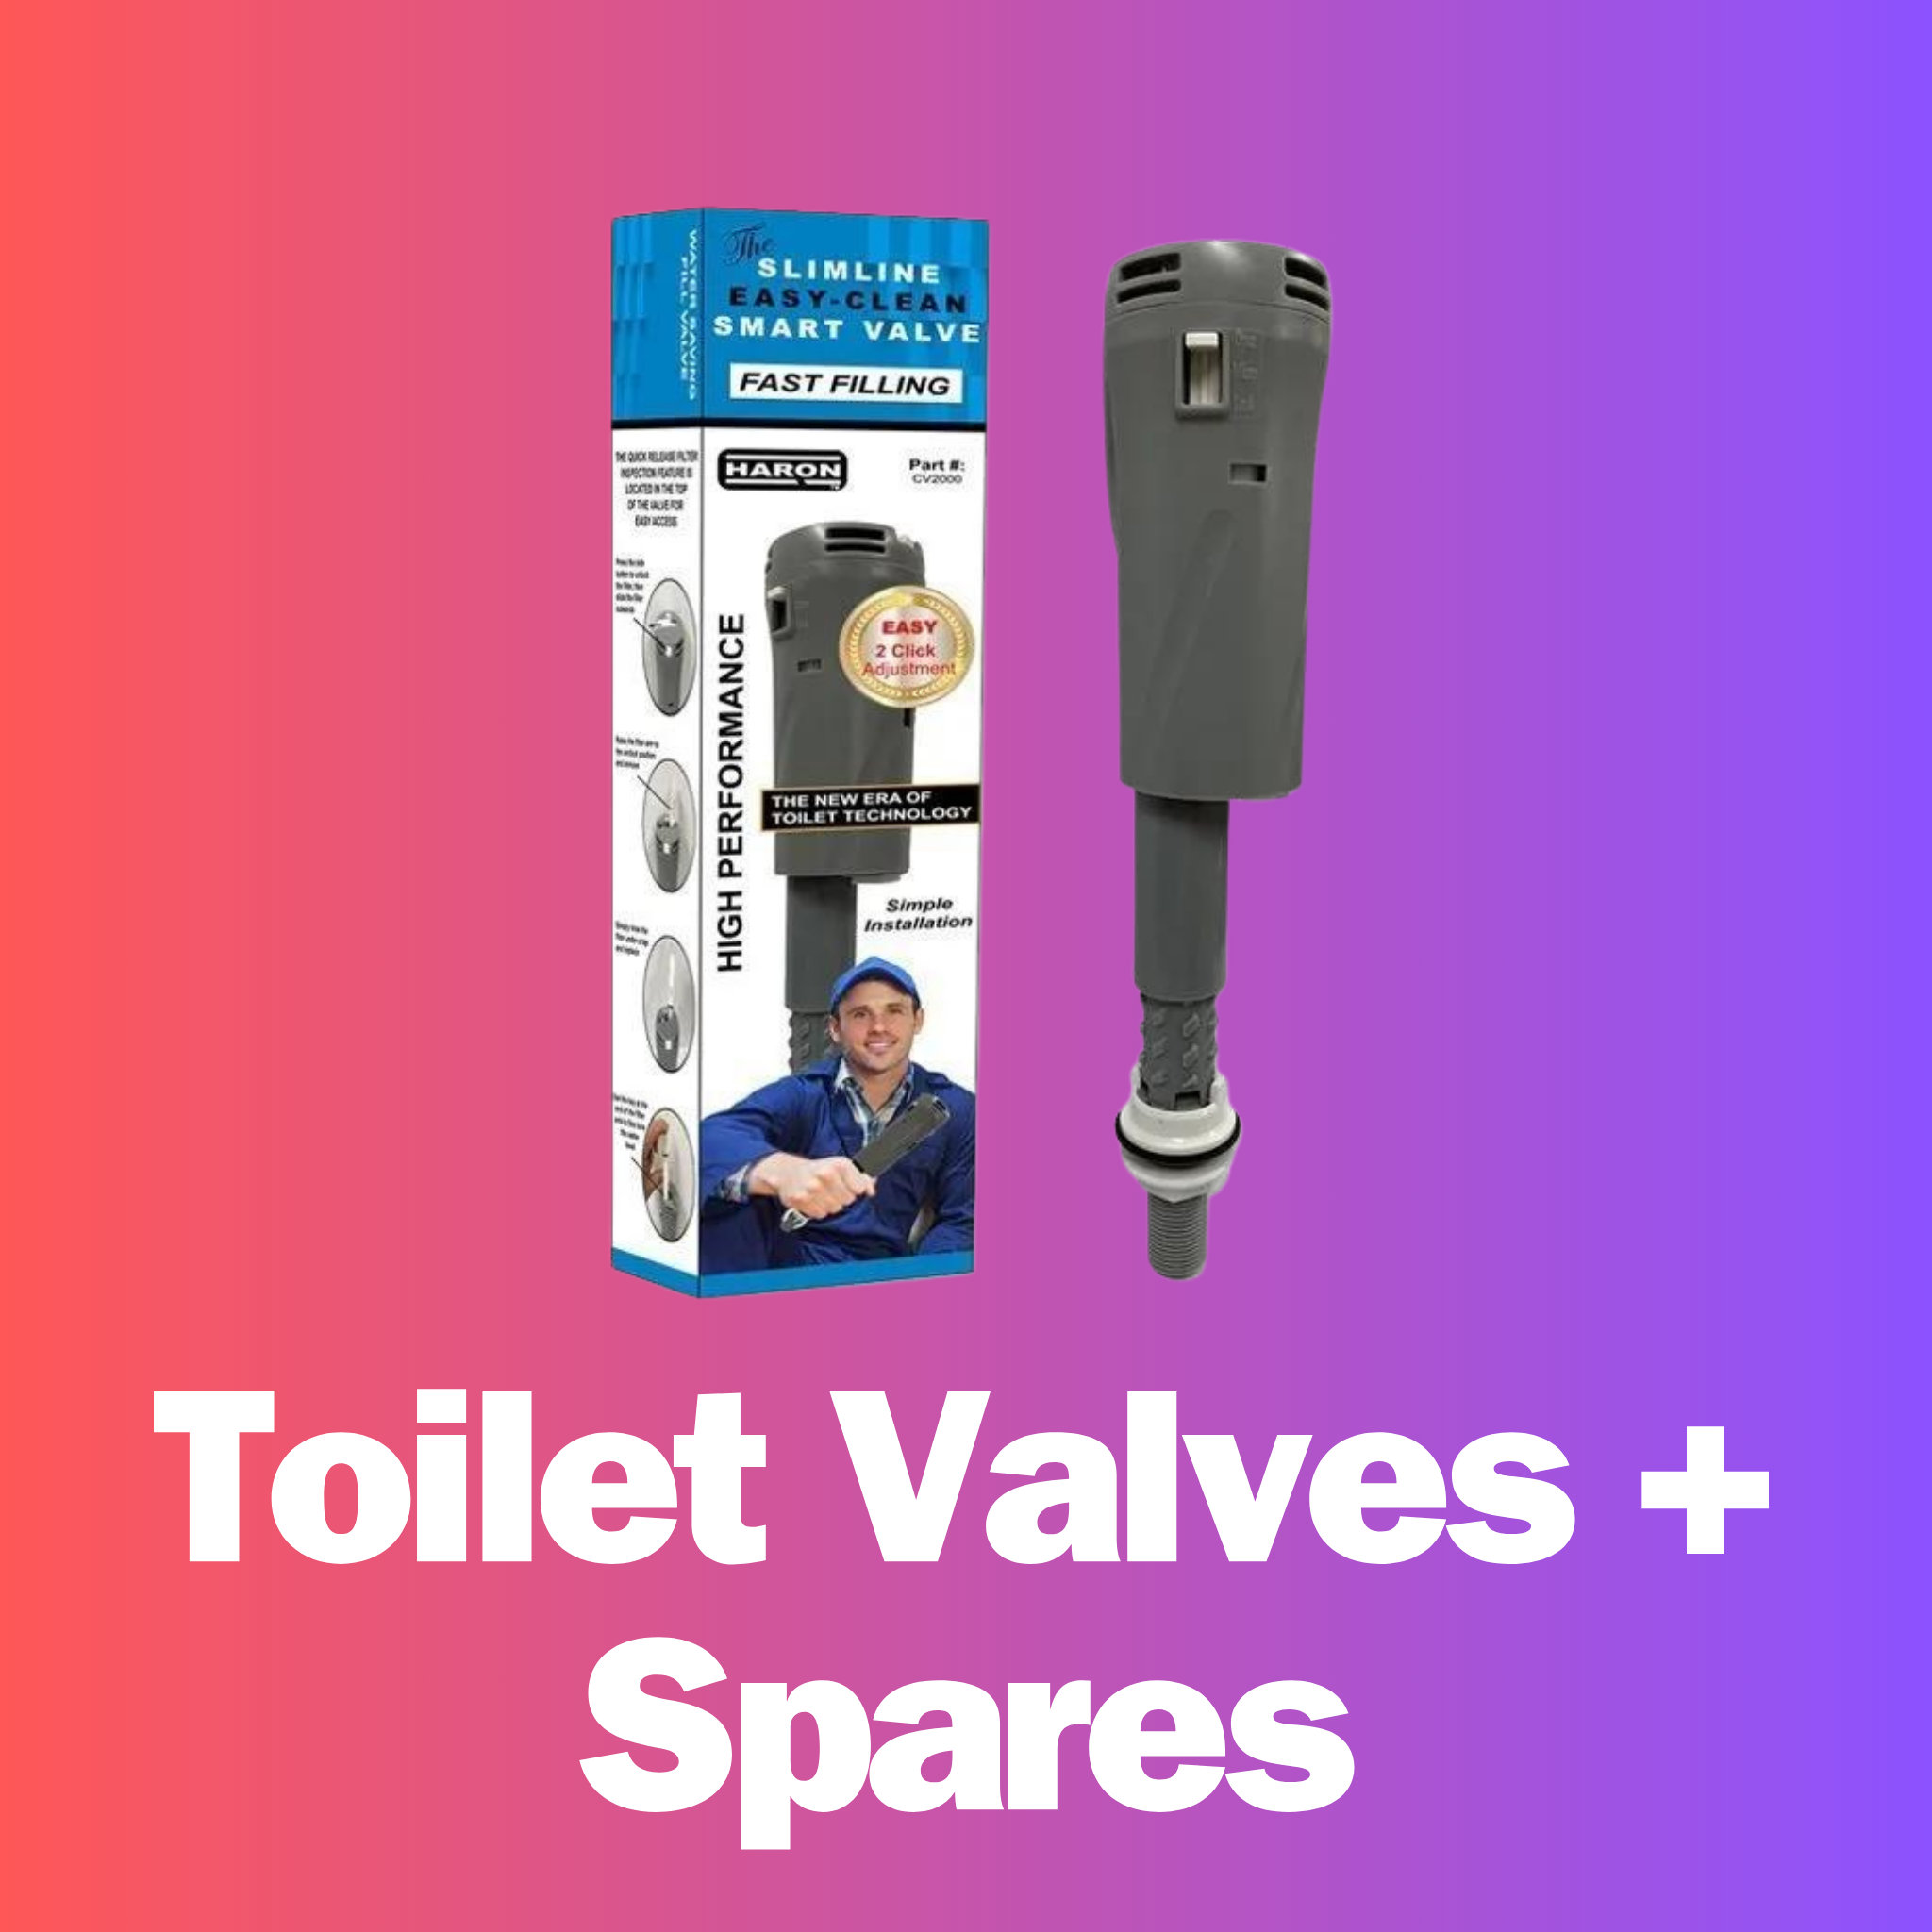 Toilet Valves + Spares